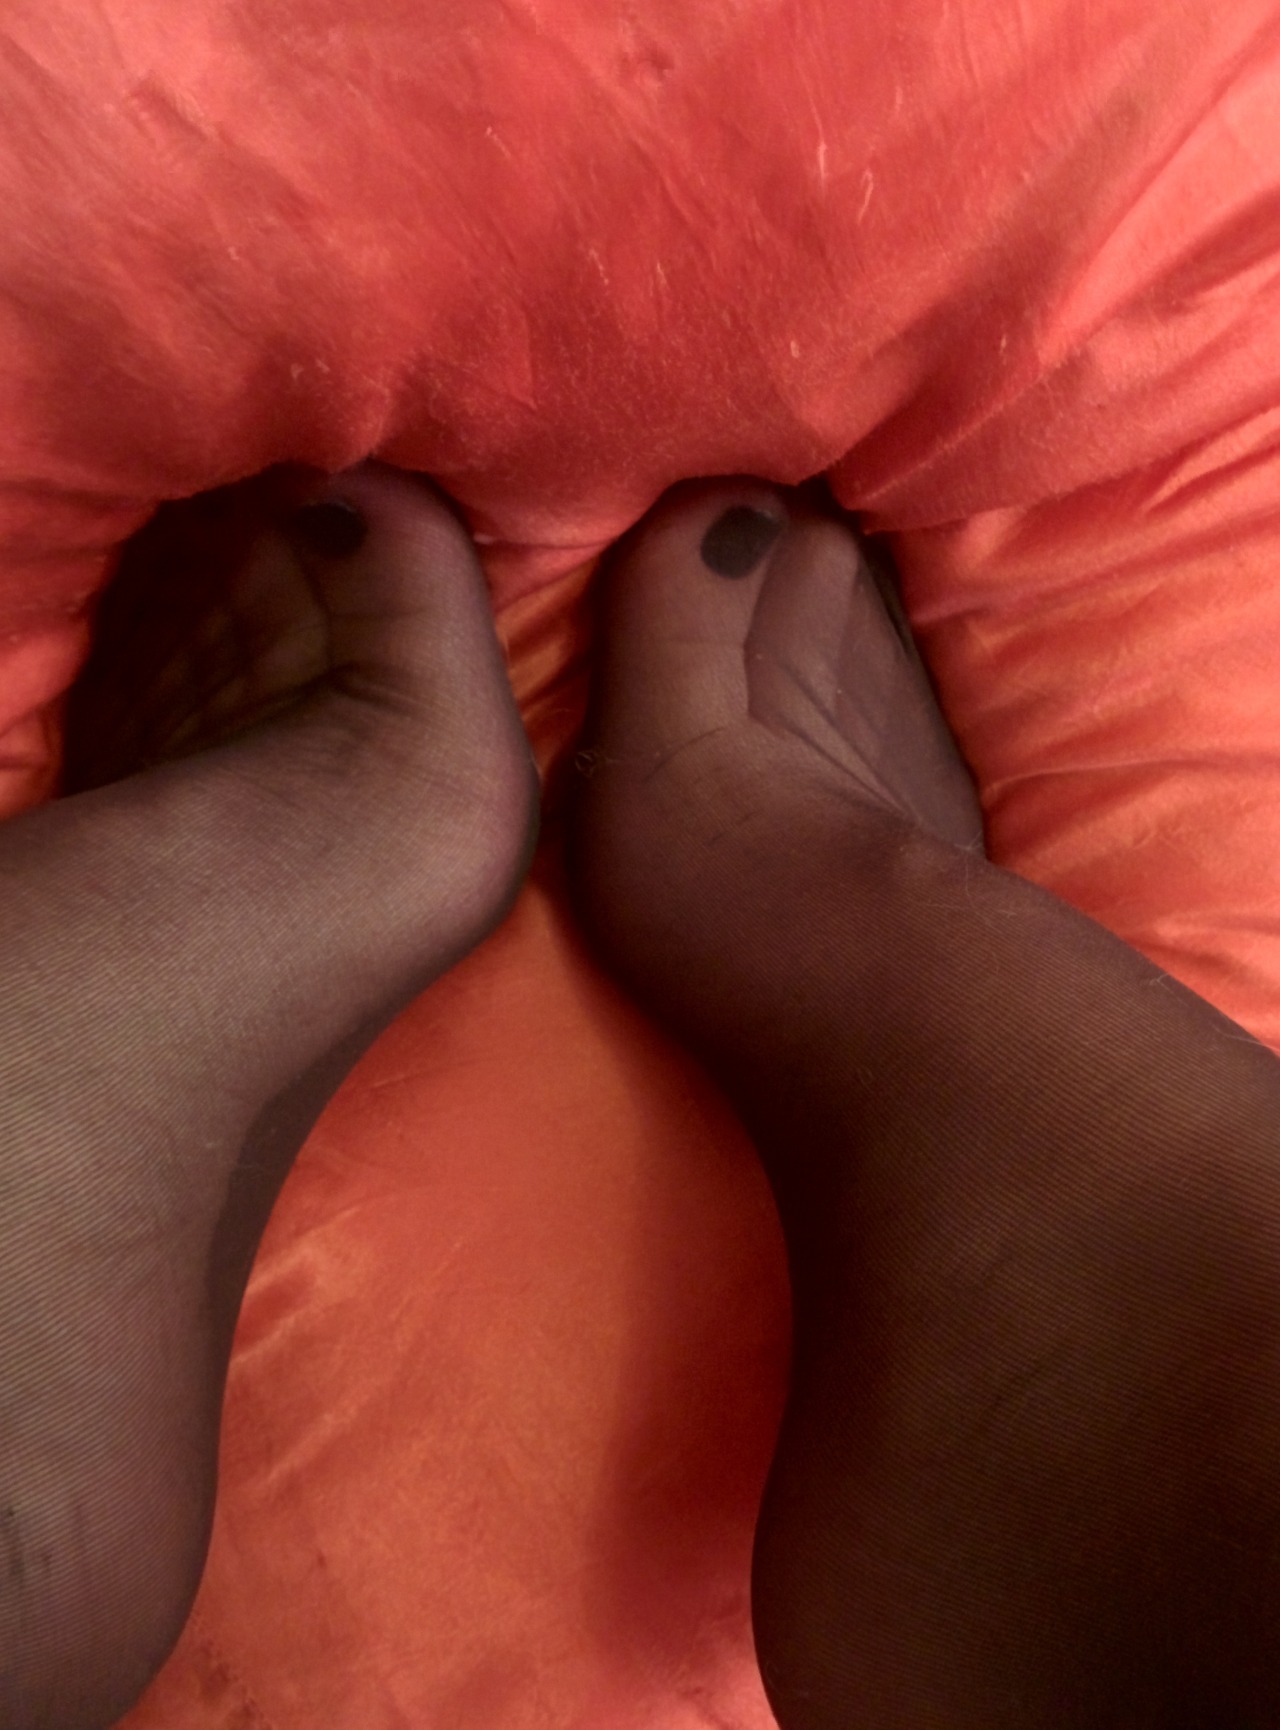 So Silky Feet Toes Footfetis